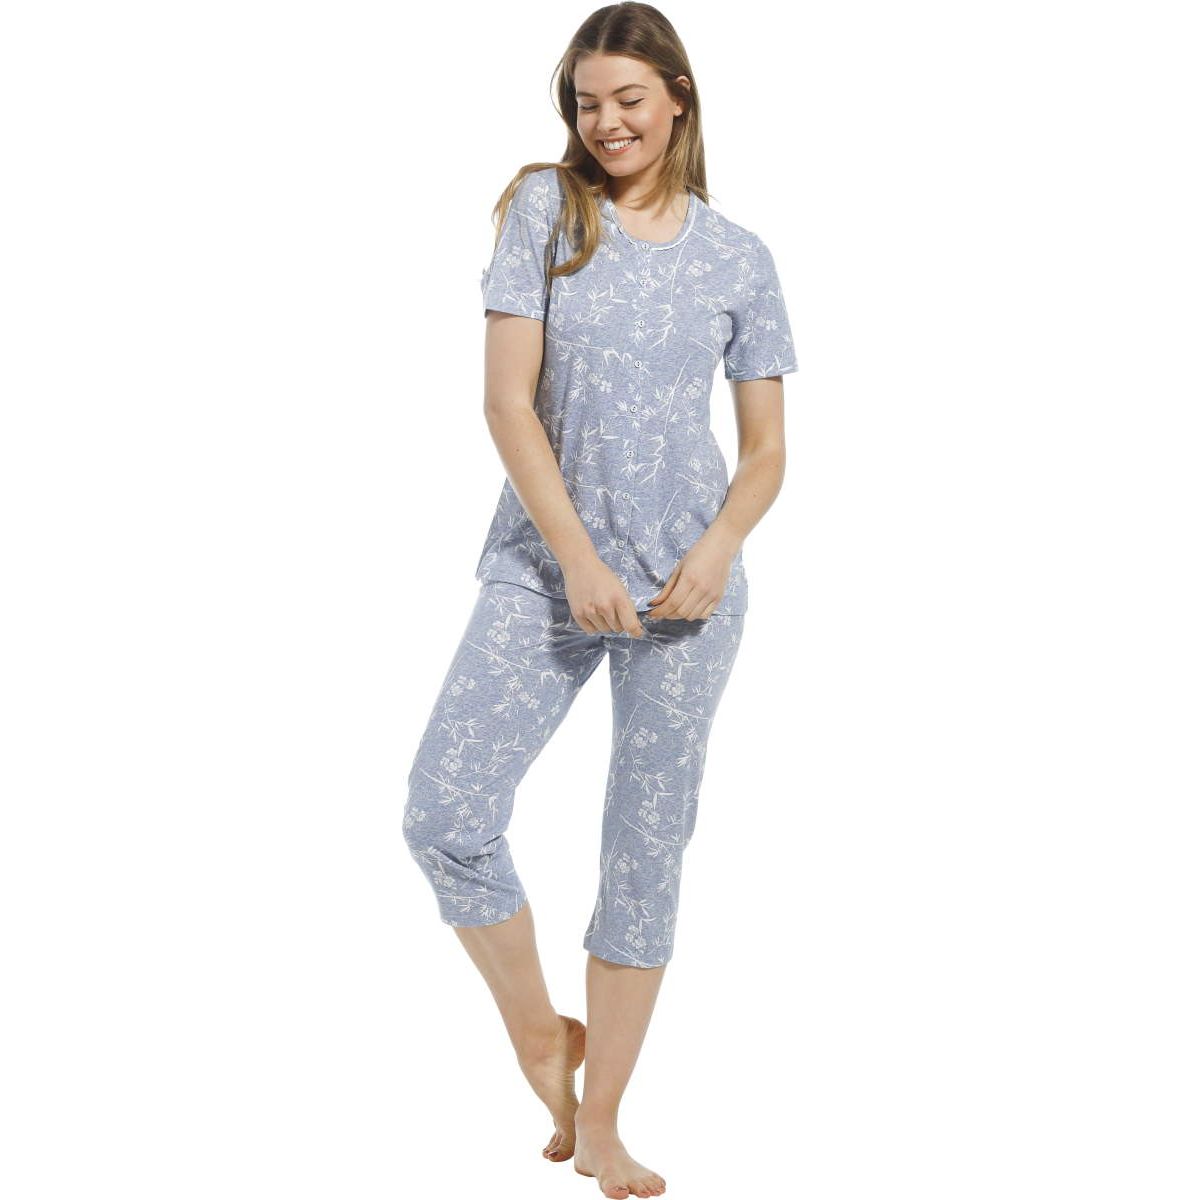 Pastunette doorknoop pyjama bloemen - 20221-100-6 - blauw